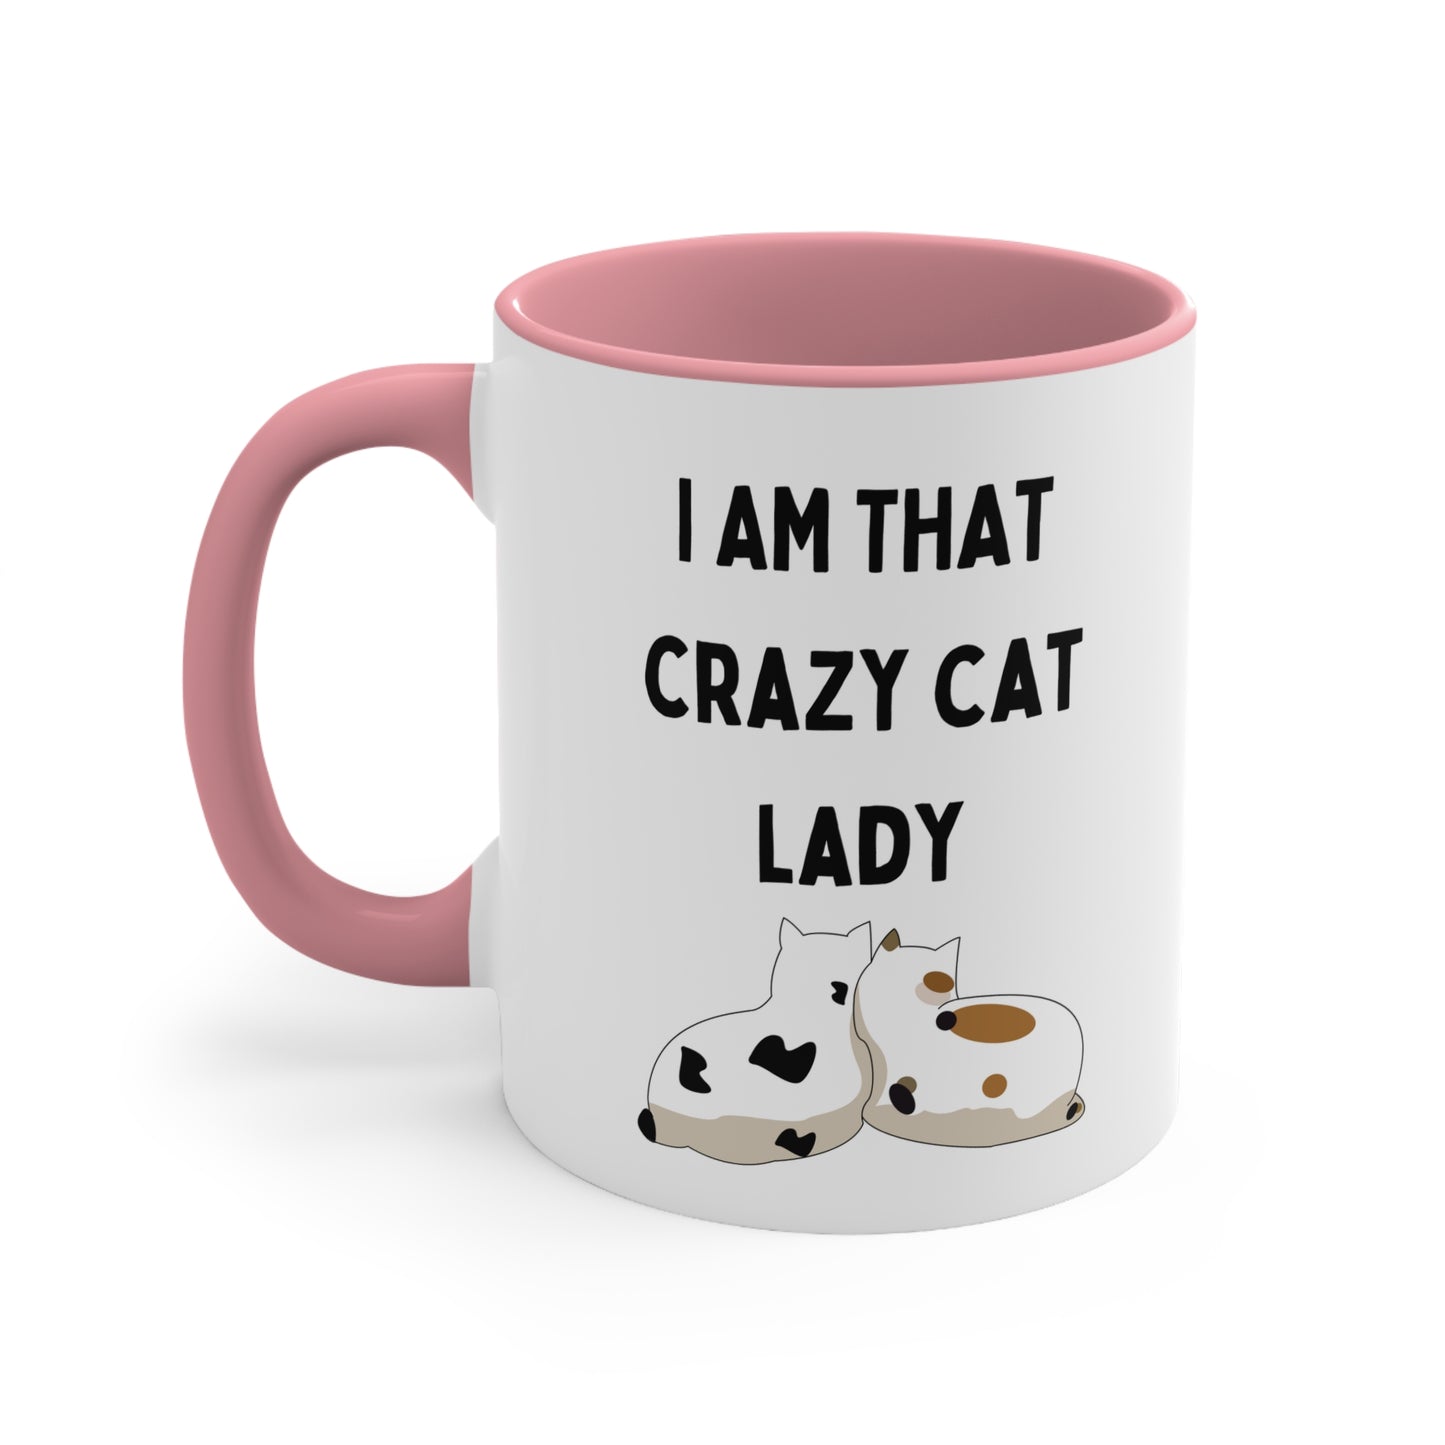 Are you a Crazy Cat Lady? Mug, 11oz